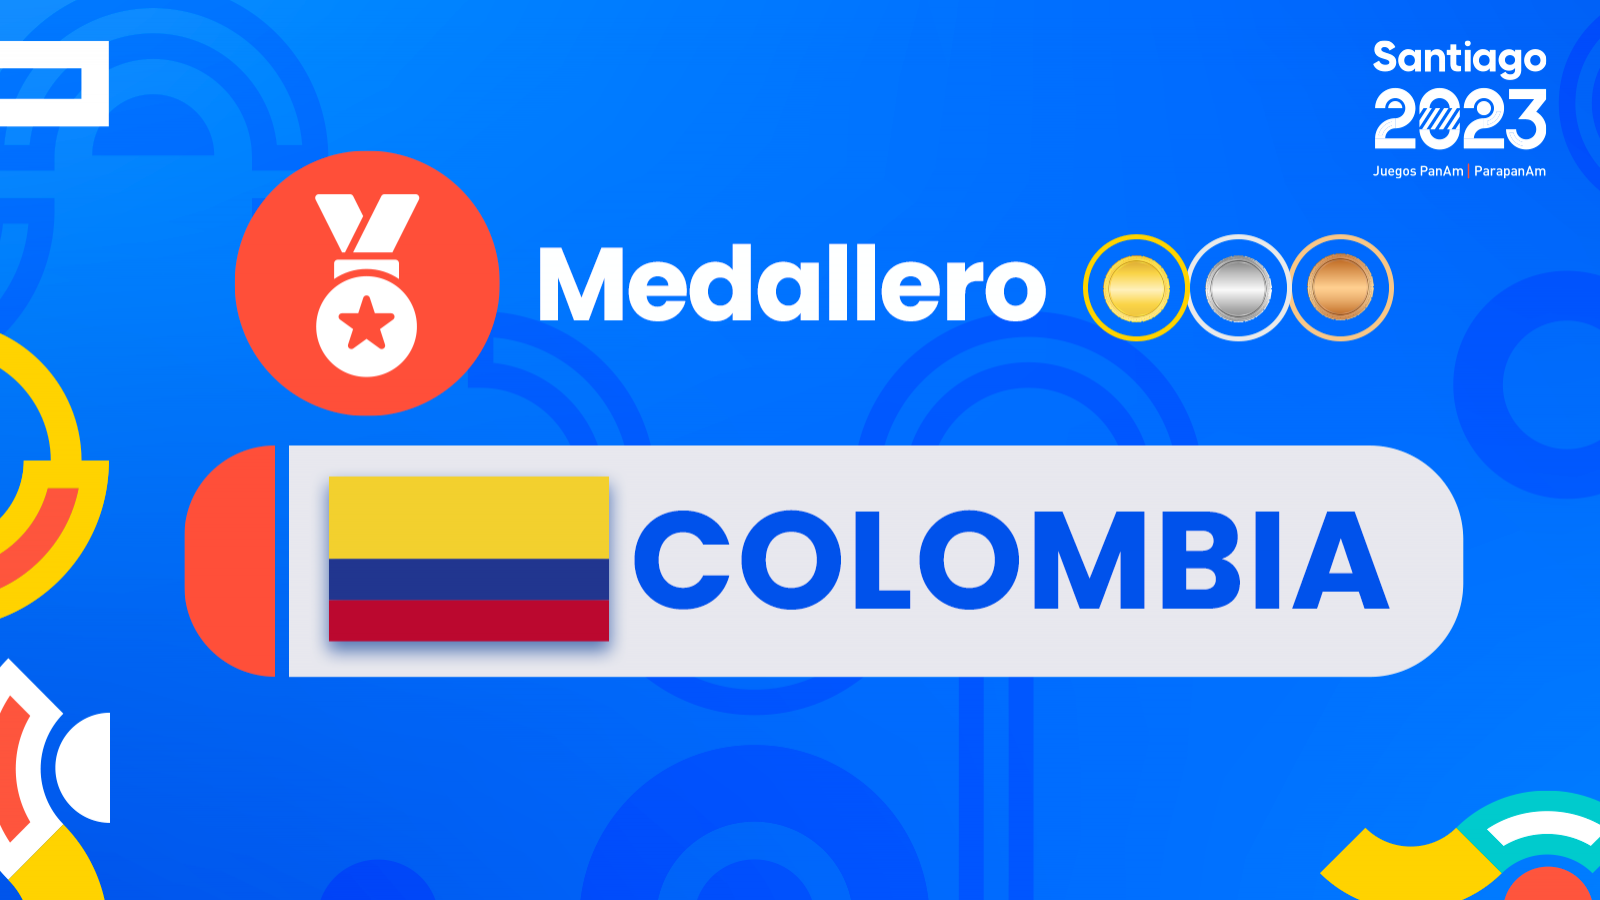 Medallas y medallero Colombia juegos panamericanos Santiago 2023.